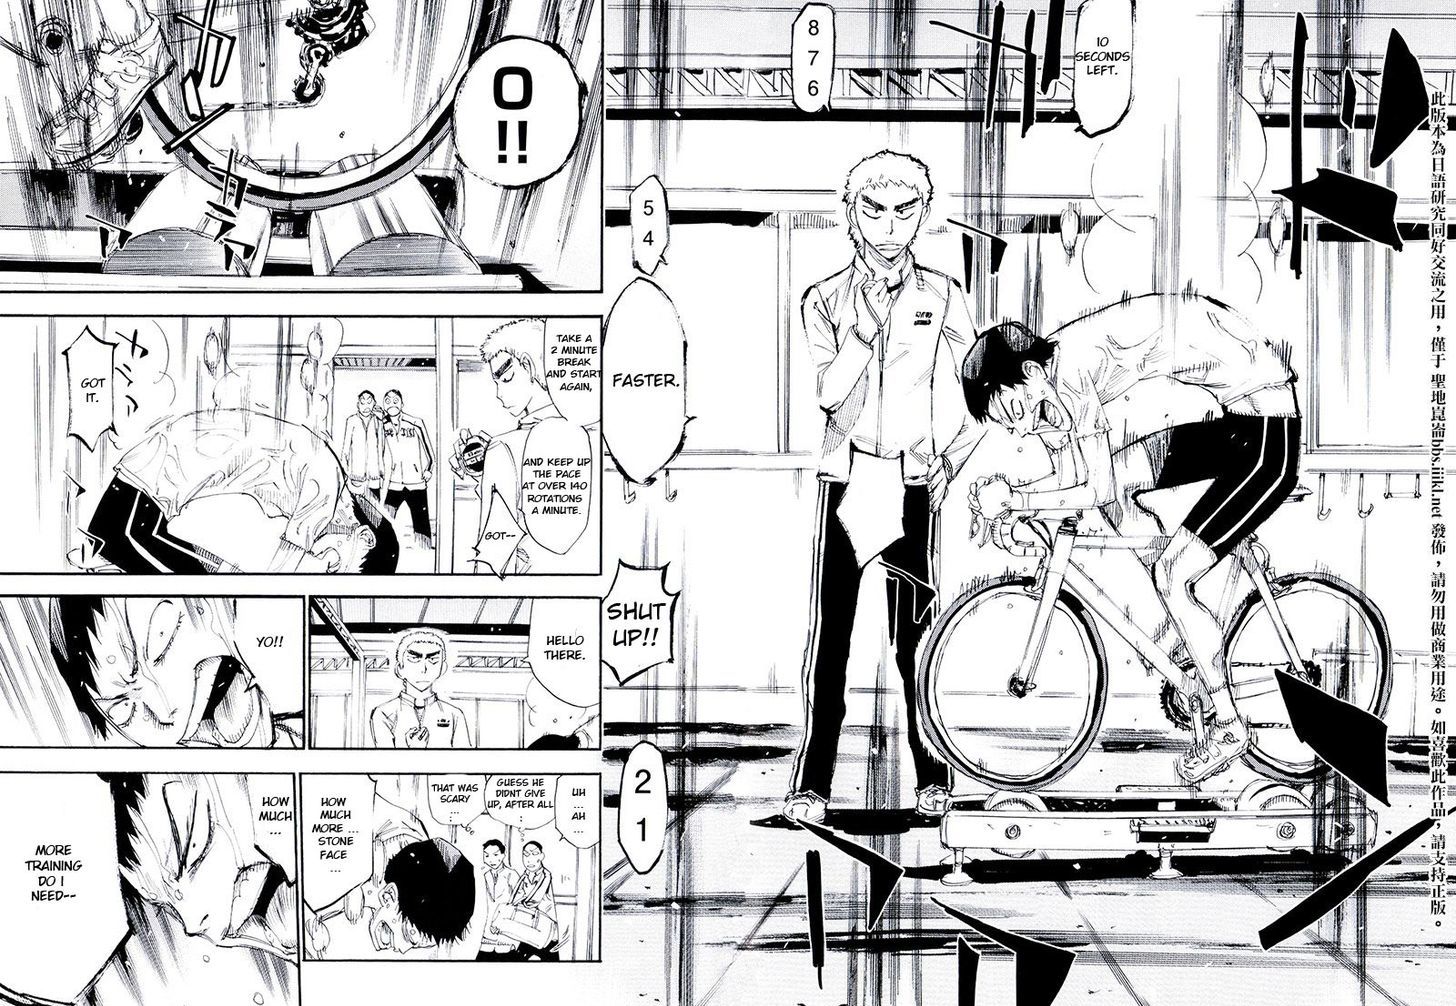 Yowamushi Pedal - Spare Bike - Page 2